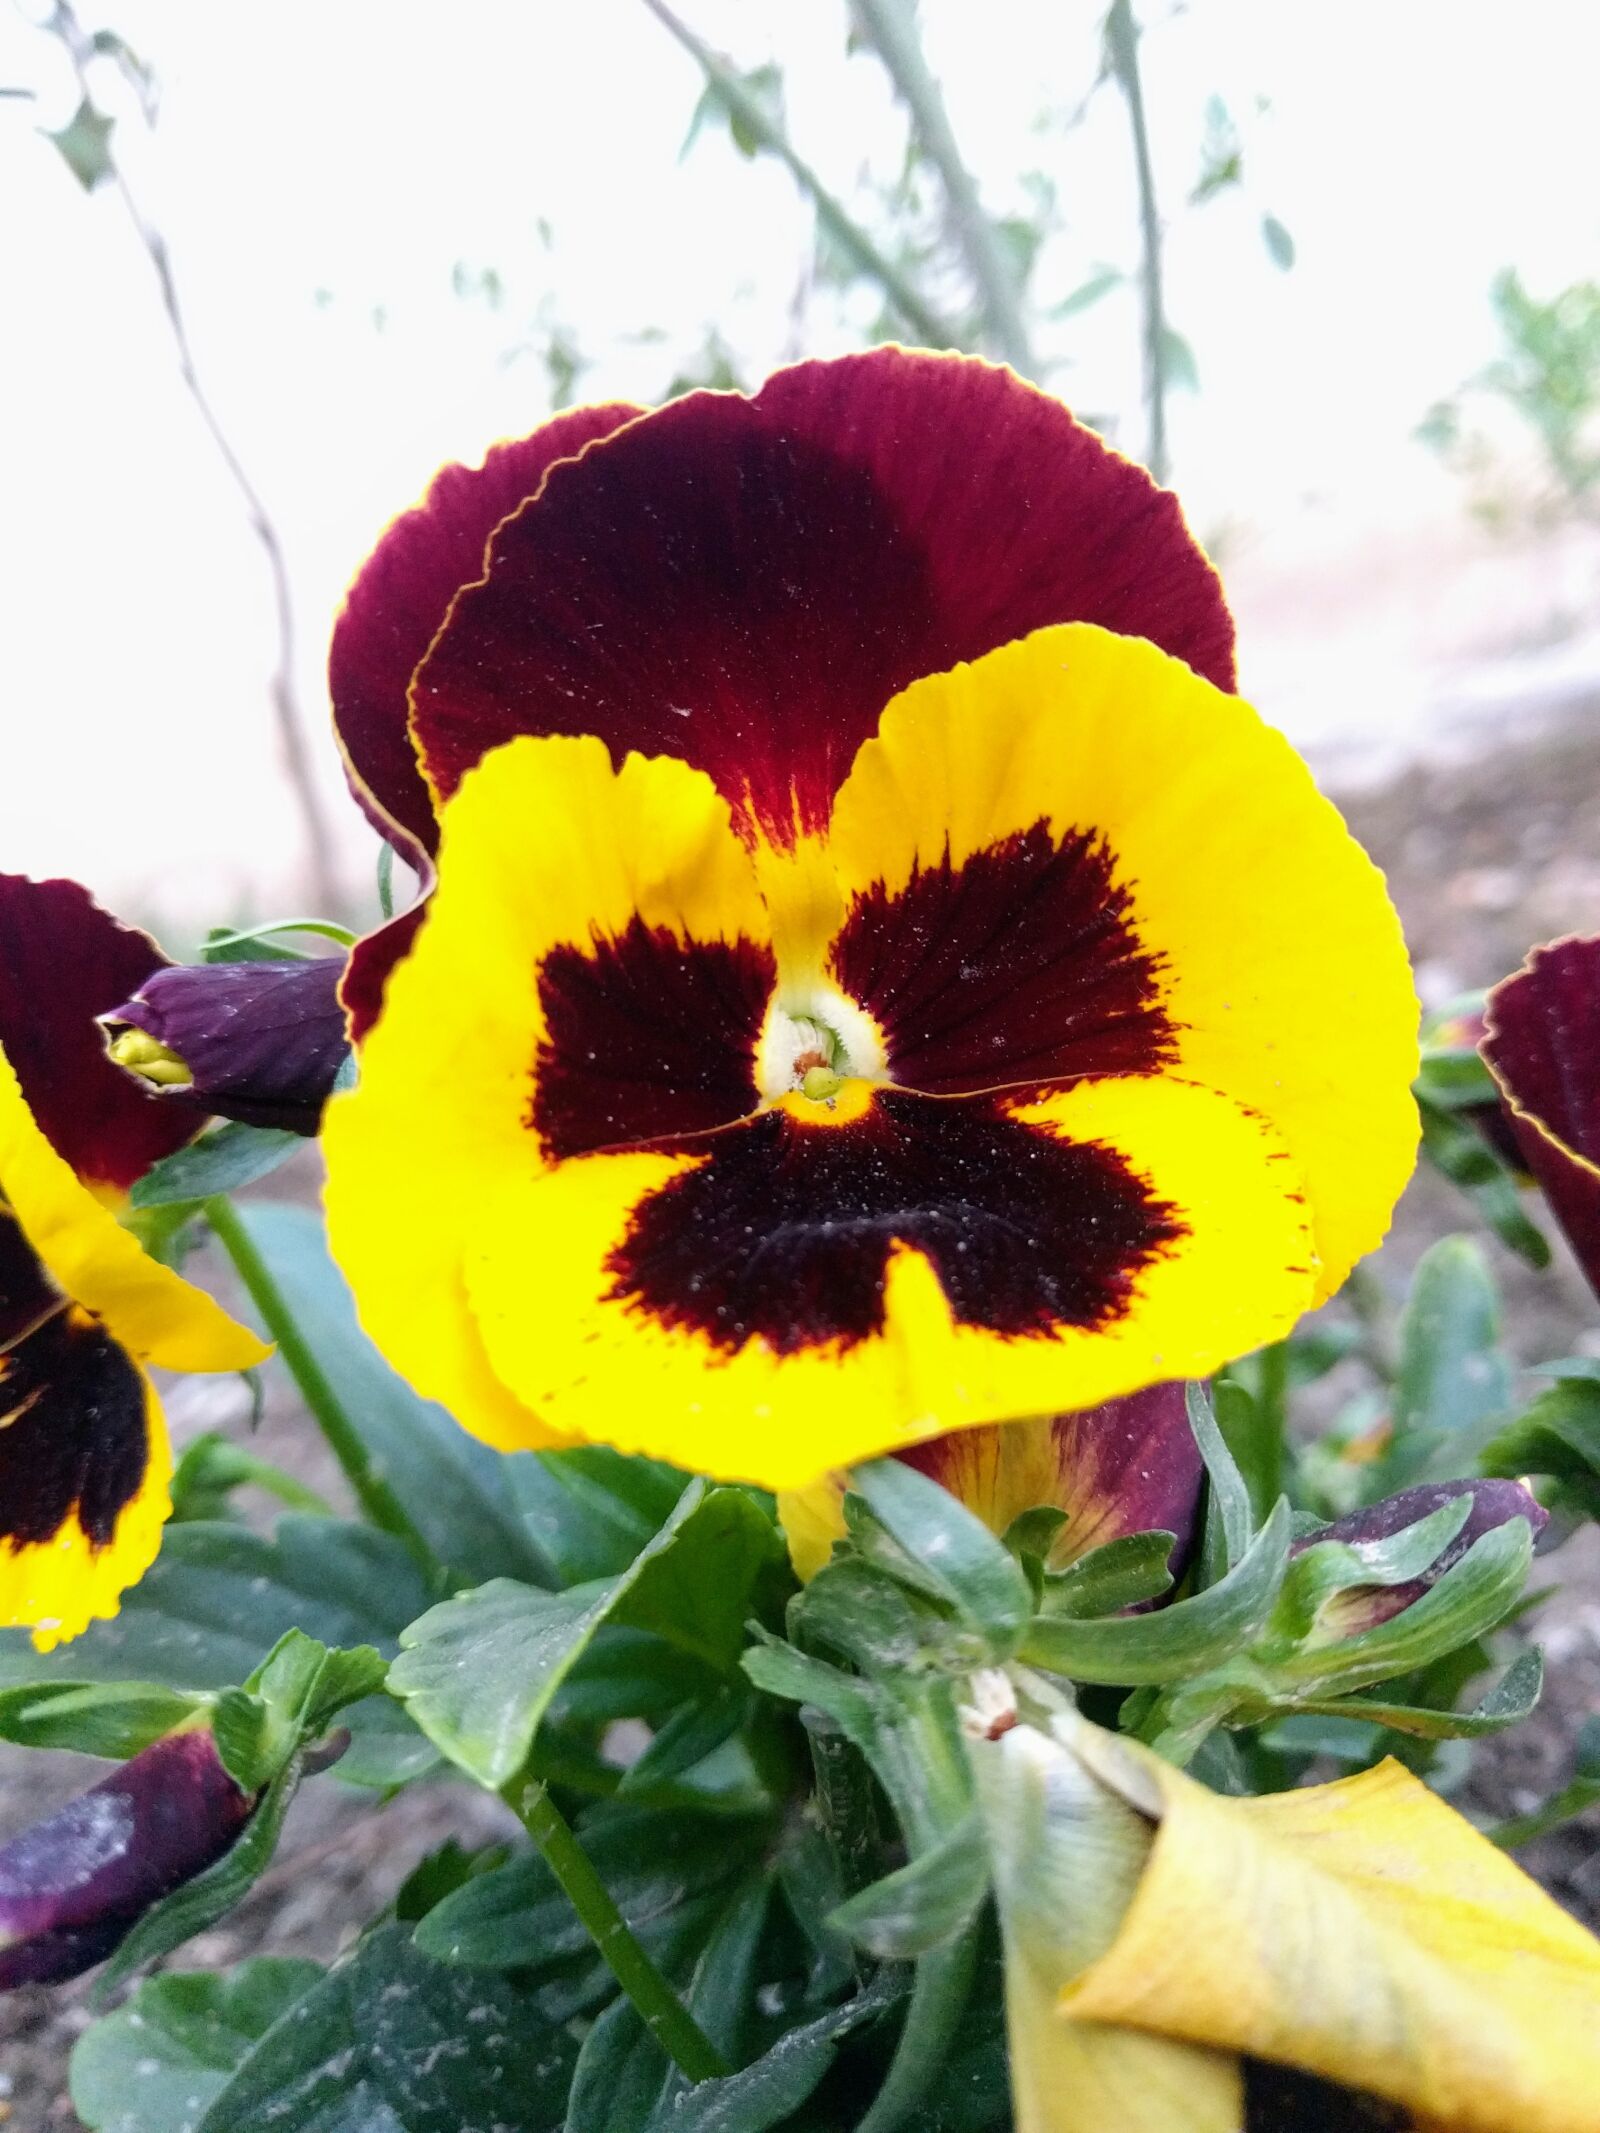 LG Nexus 5X sample photo. Yellow flower, flower, nature photography